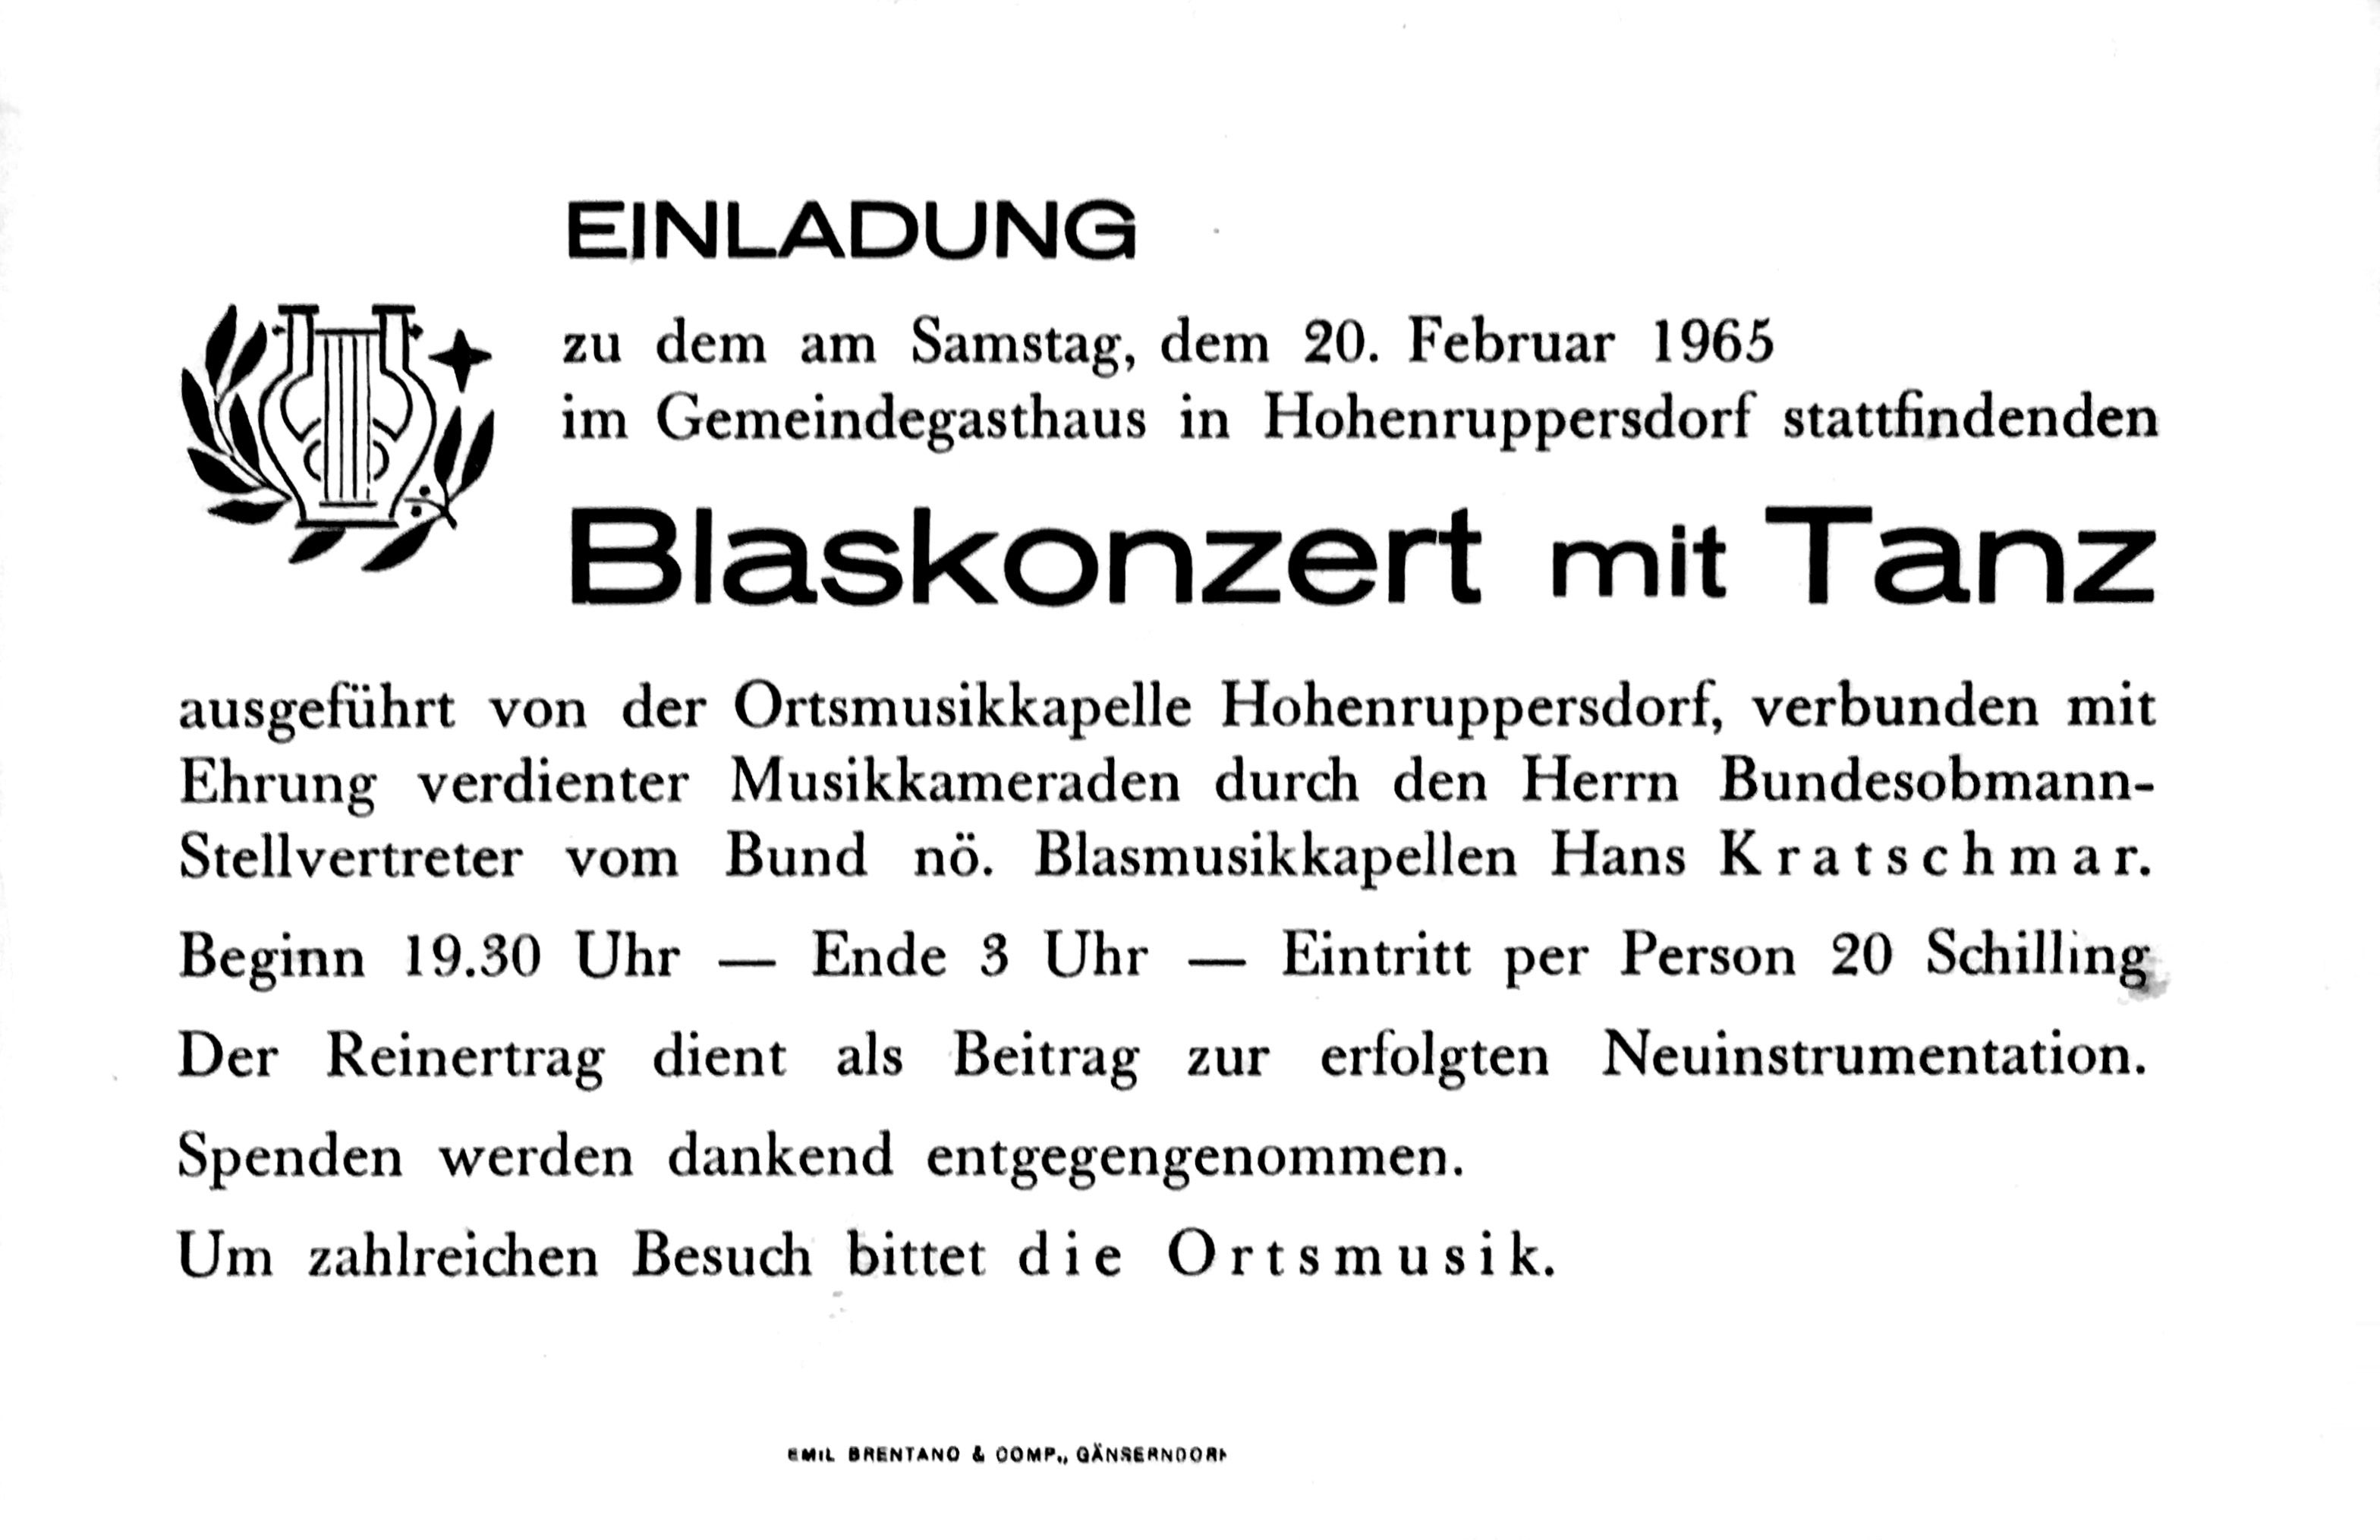 Einladung zum Blaskonzert, 1965